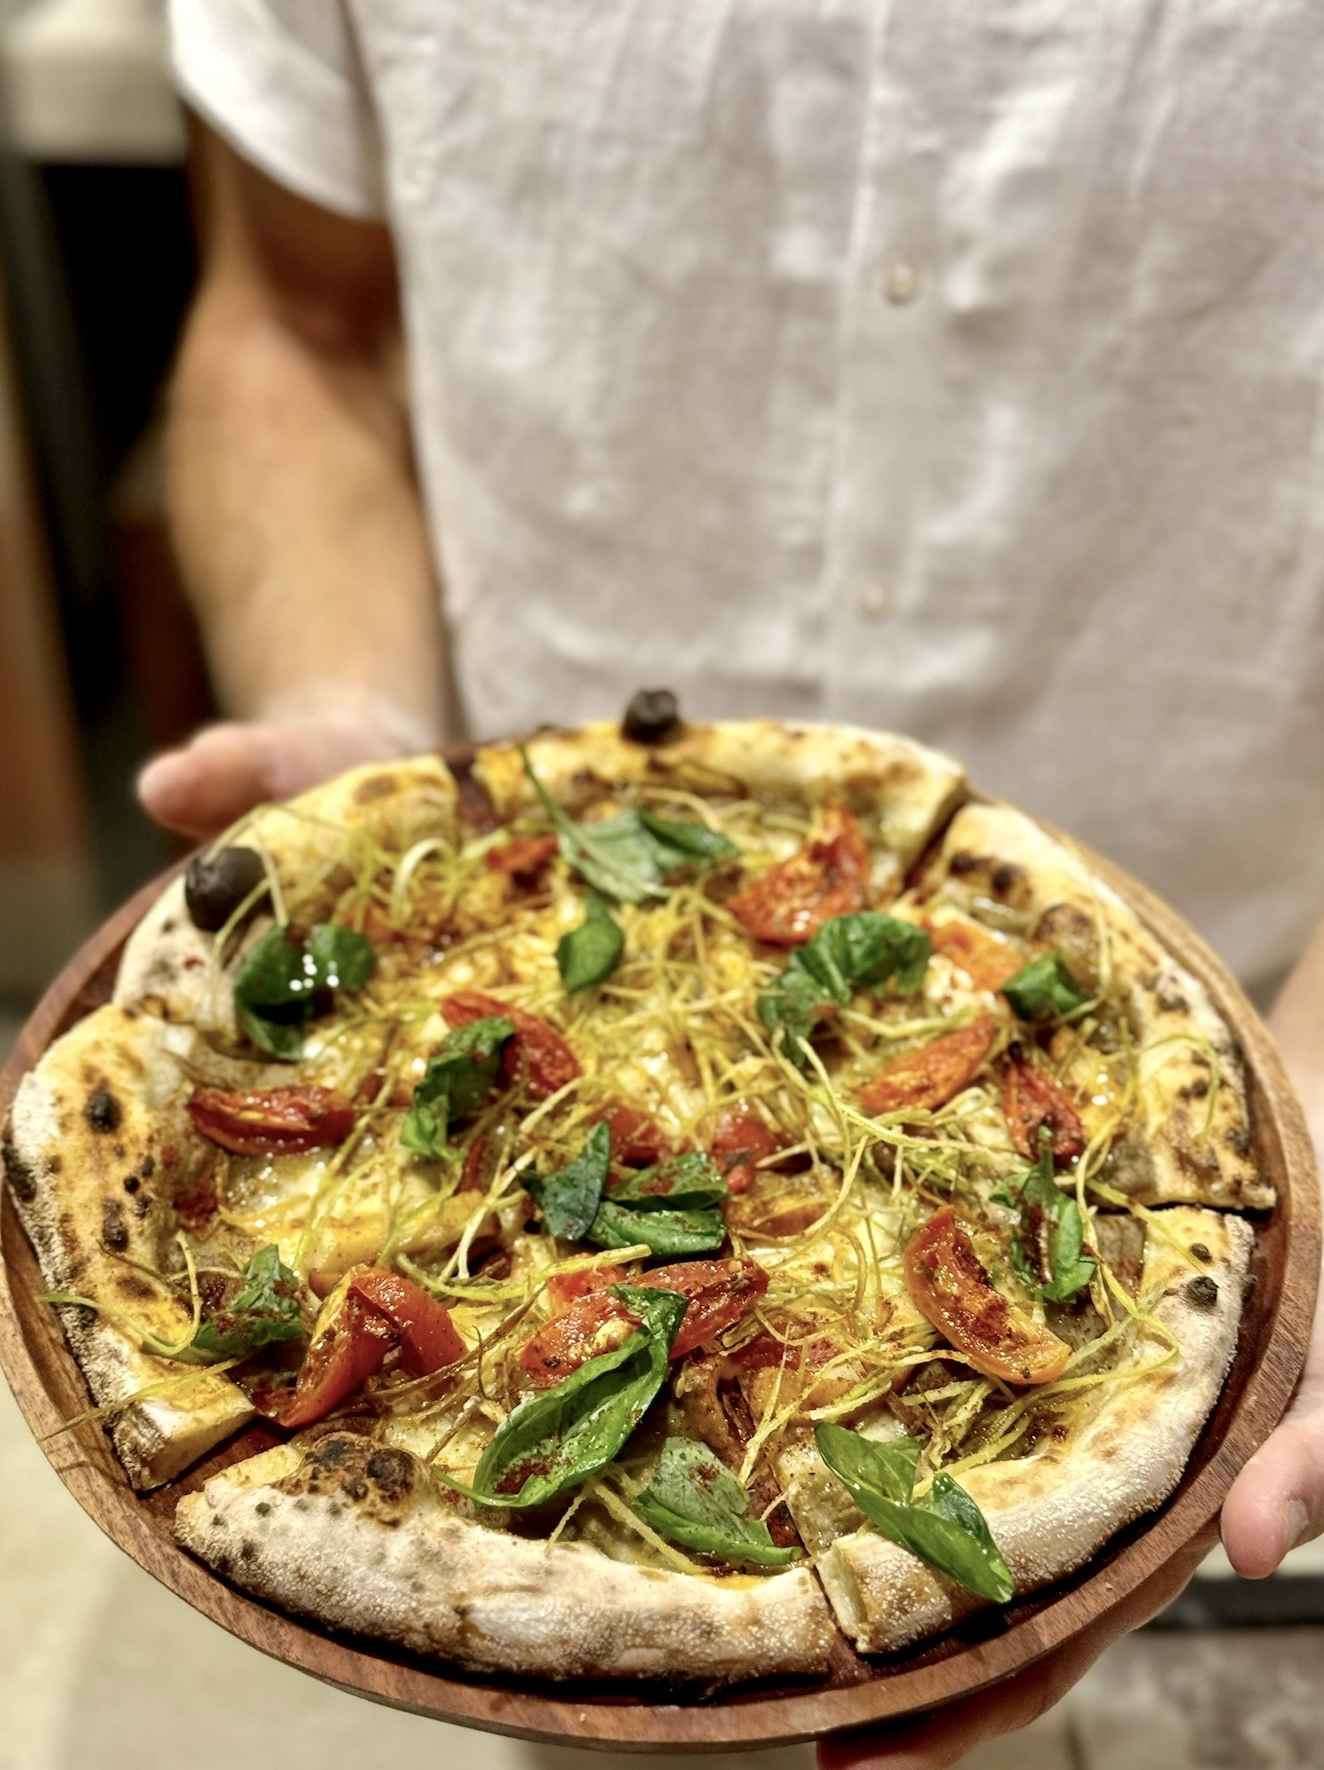 sourdough pizza expert consultant recipe creator chef andrea danelli from sri lanka england italy europe @theheartofpizza on instagram social media 2